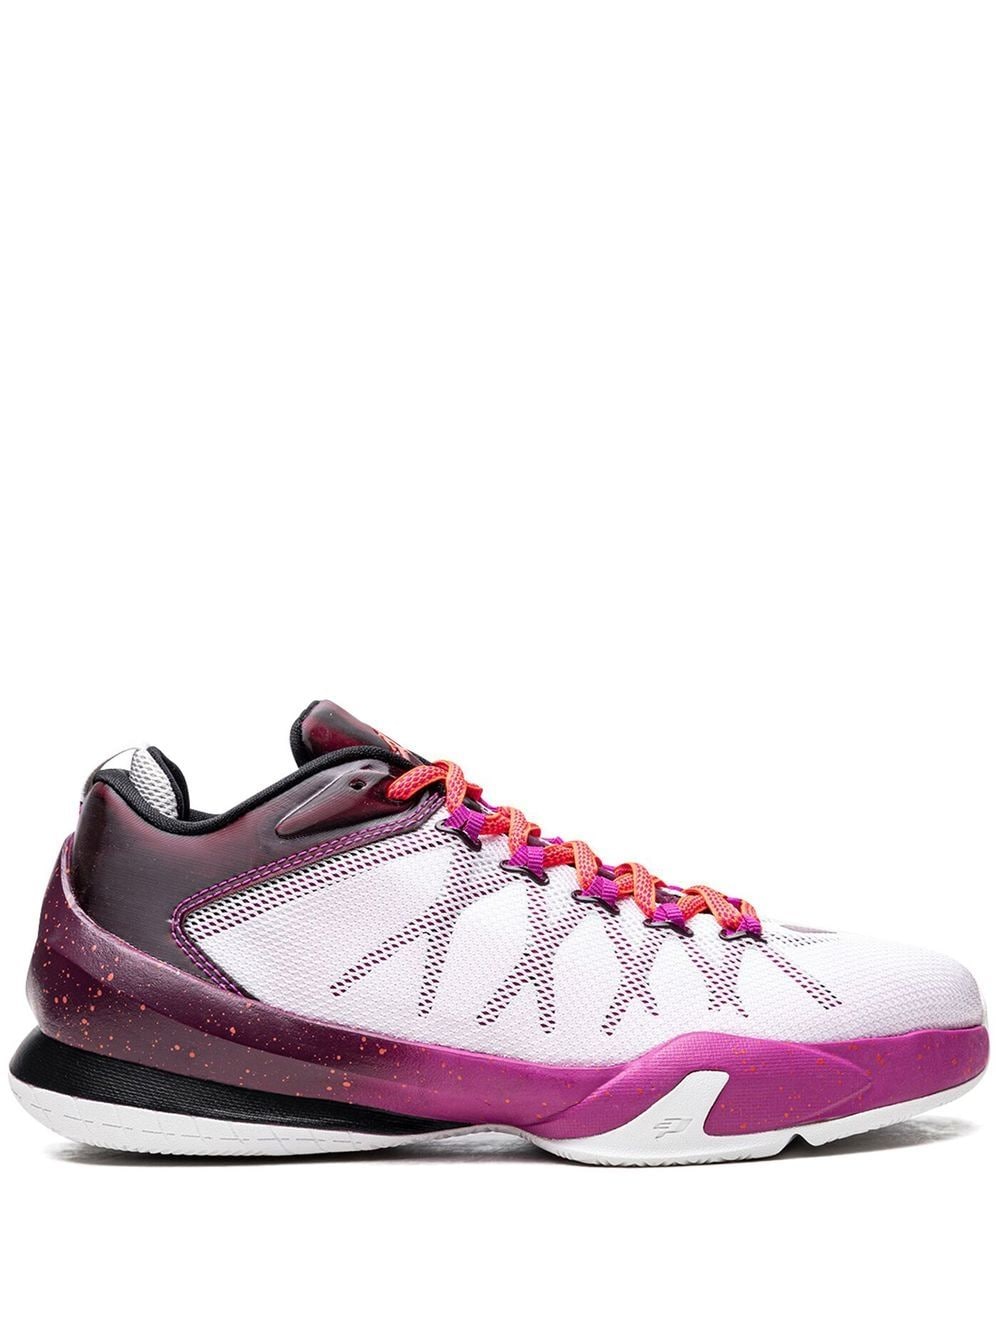 Jordan Jordan CP3.VIII AE sneakers - White